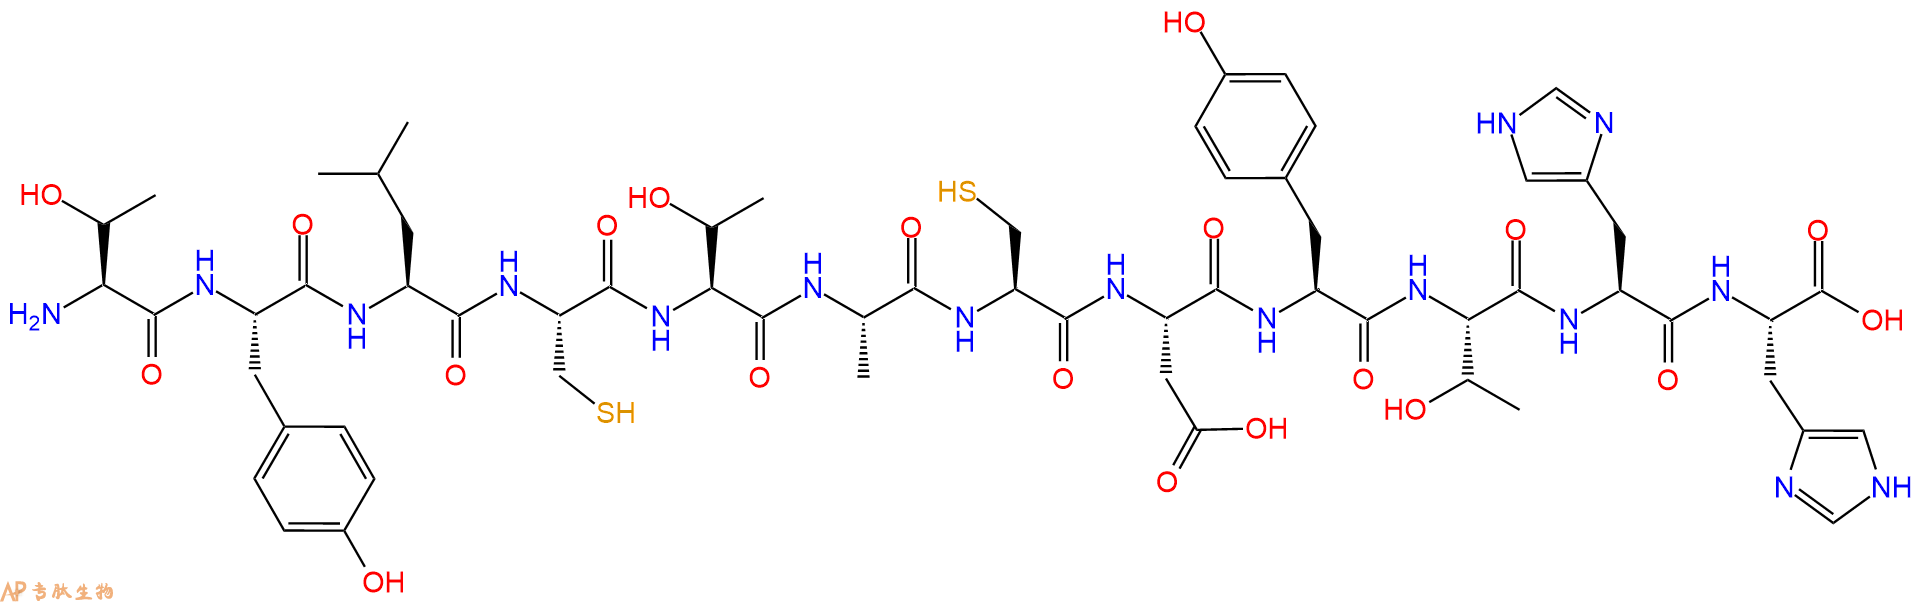 专肽生物产品H2N-Thr-Tyr-Leu-Cys-Thr-Ala-Cys-Asp-Tyr-Thr-His-Hi